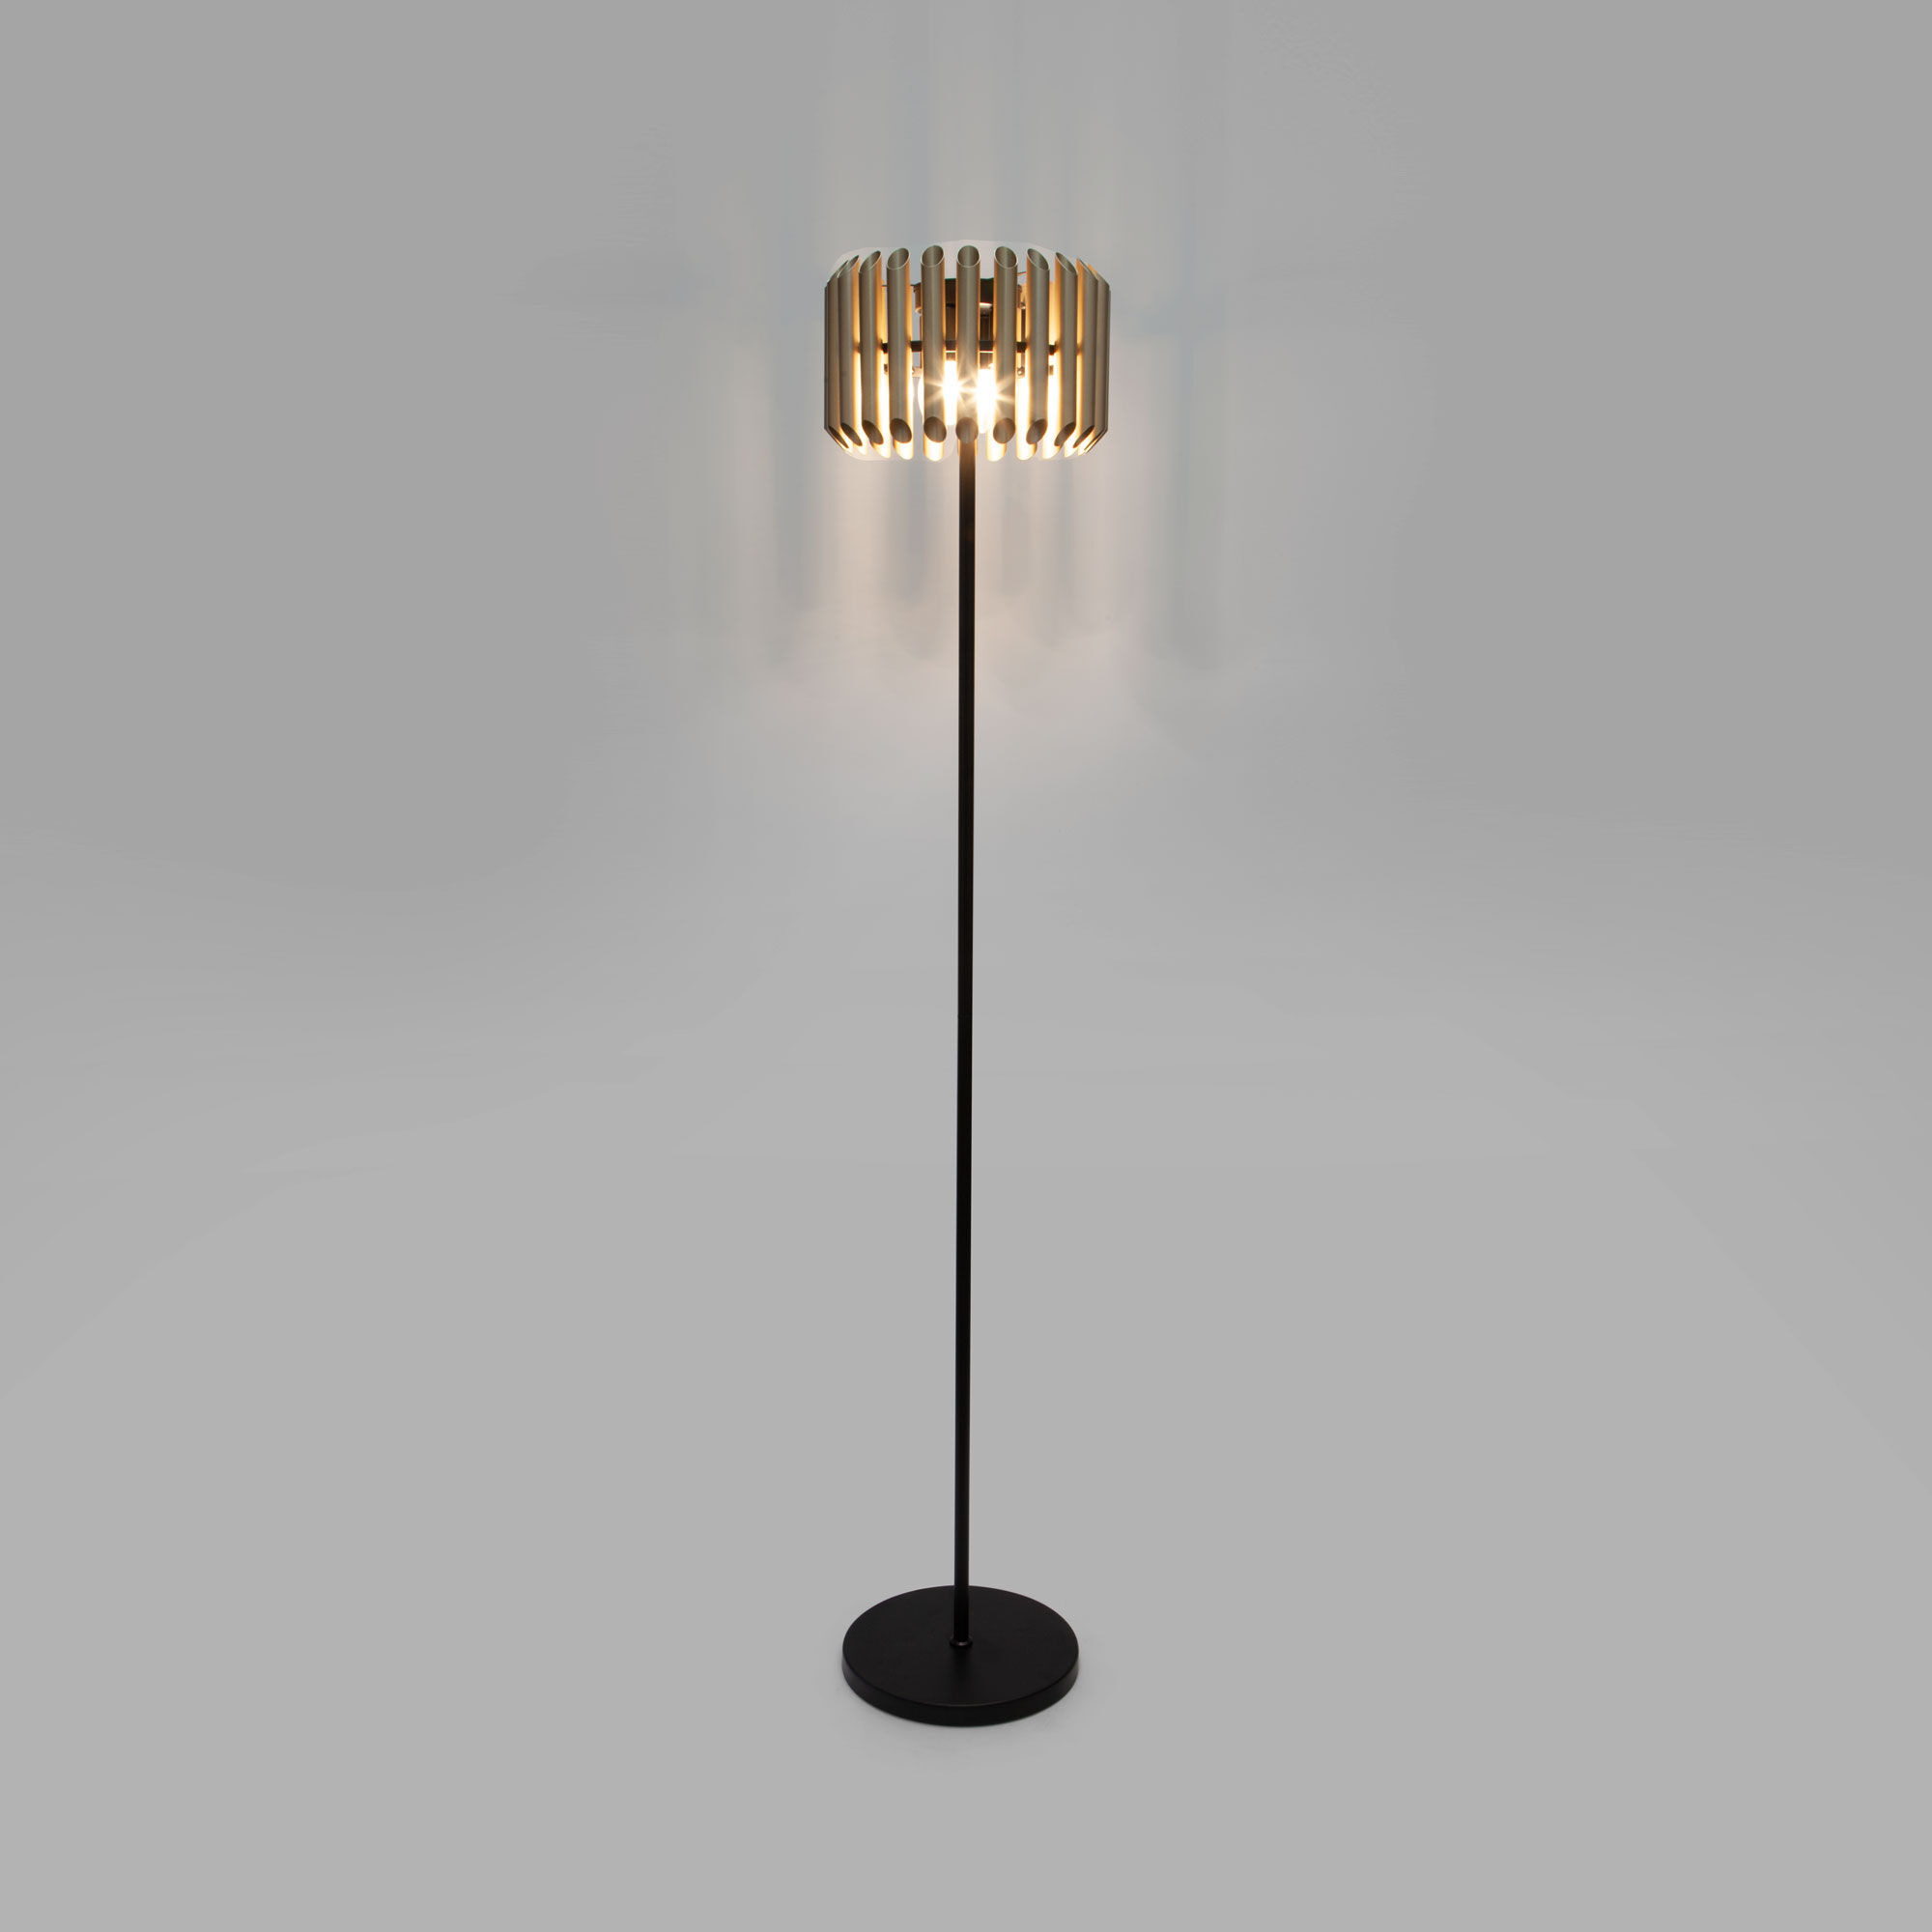 Напольный светильник с металлическим плафоном Bogate's Castellie 01124/4. Фото 3